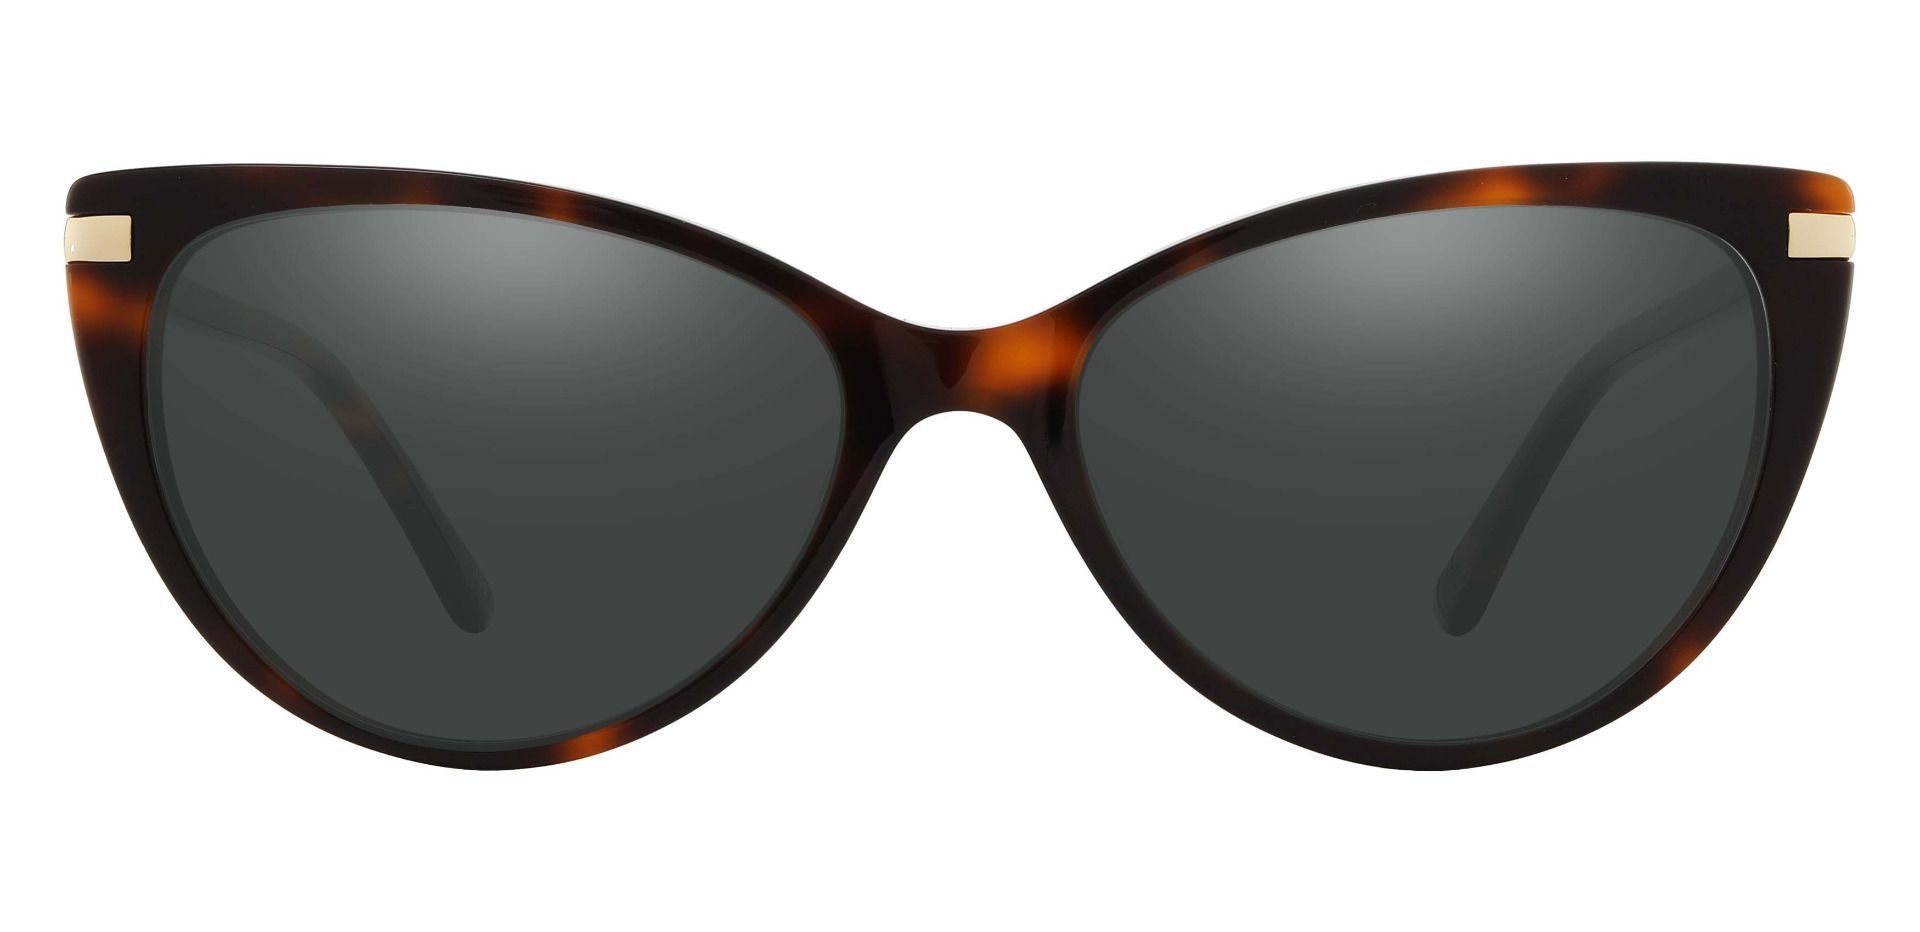 Starla Cat Eye Non-Rx Sunglasses - Tortoise Frame With Gray Lenses